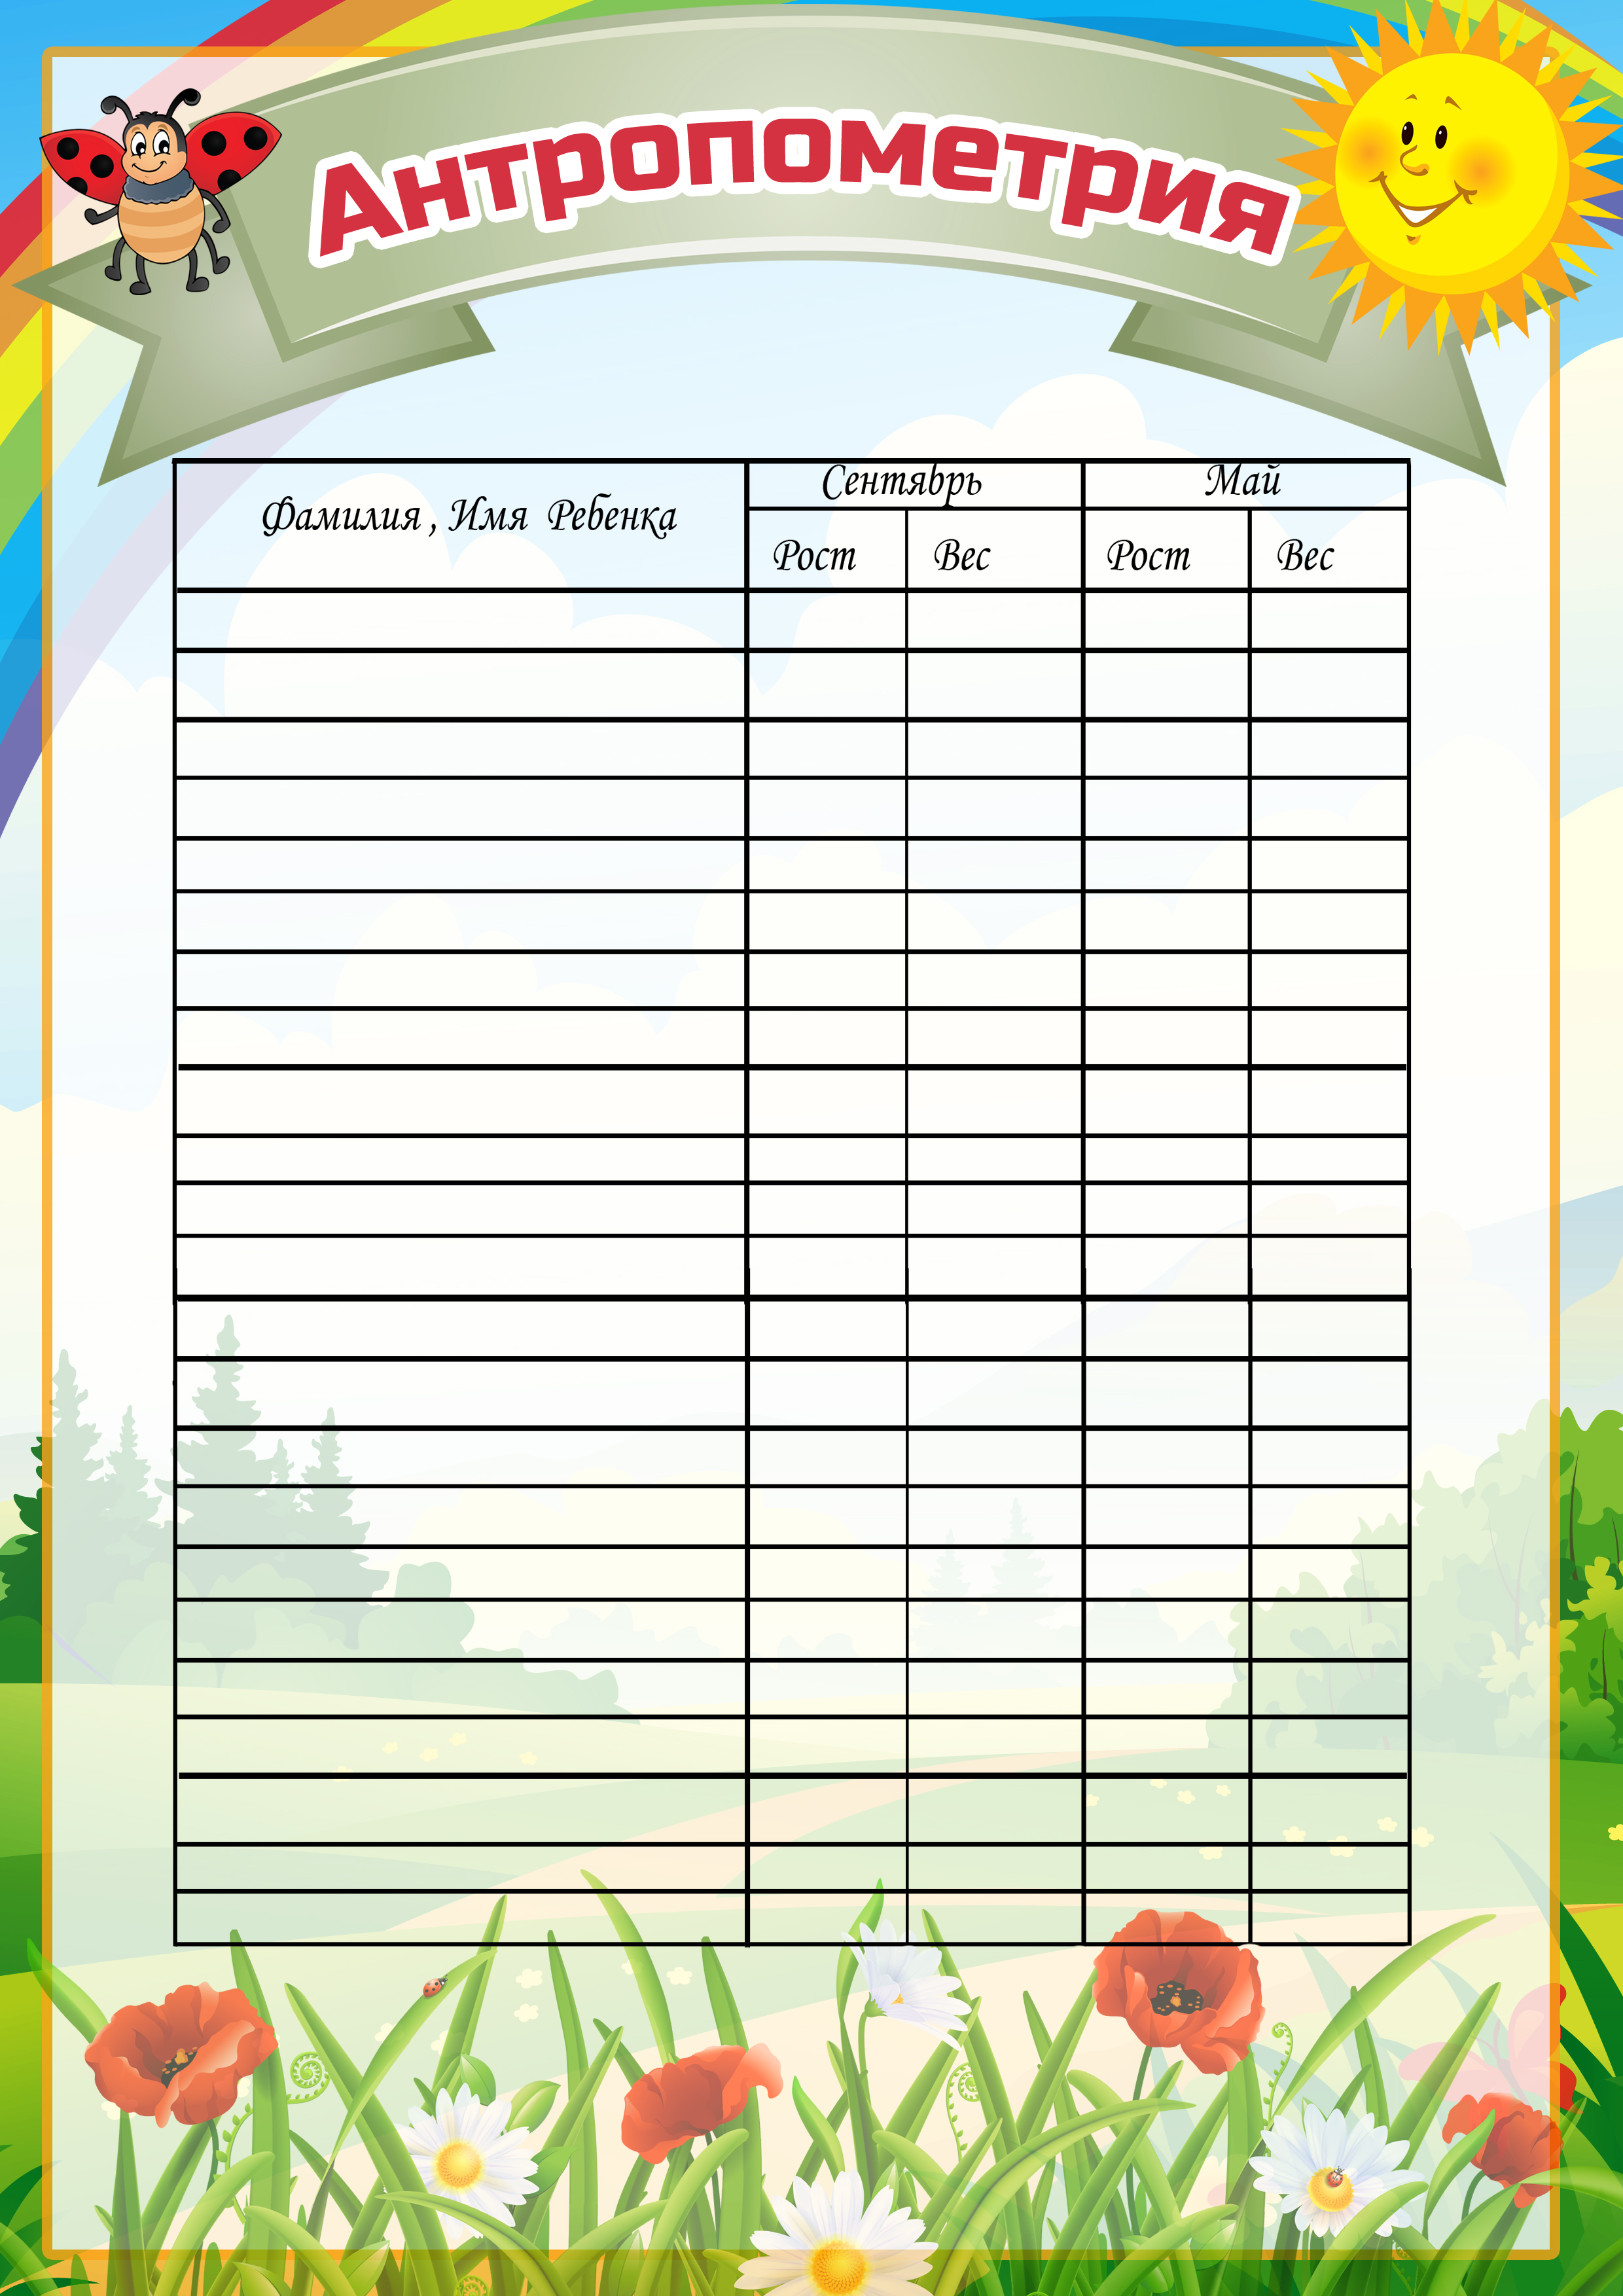 Шаблоны списков в детском саду - распечатать и скачать